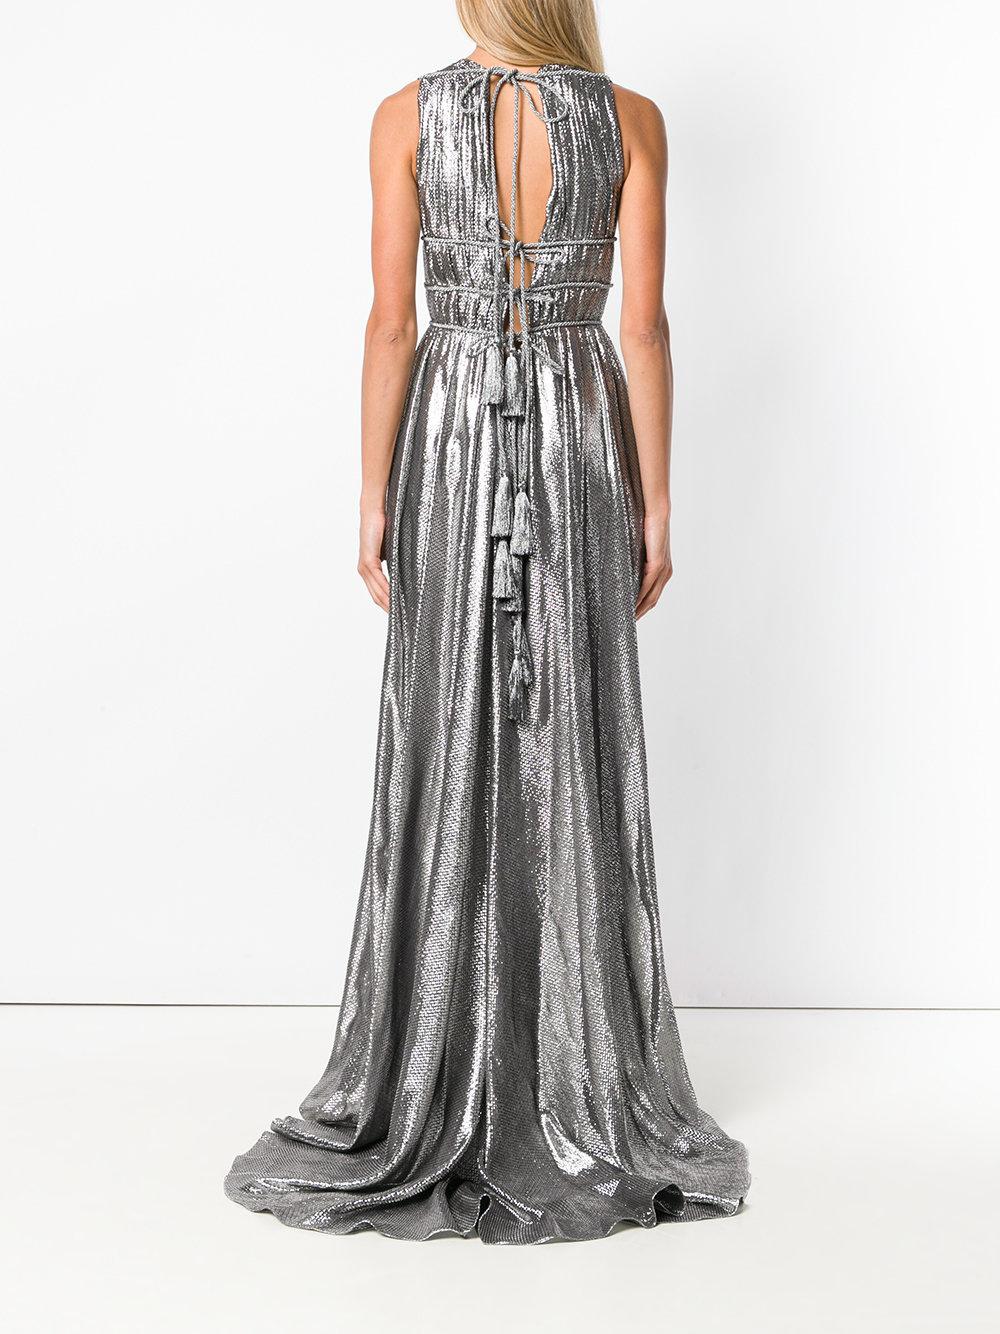 Alberta Ferretti Metallic Grecian Dress Lyst